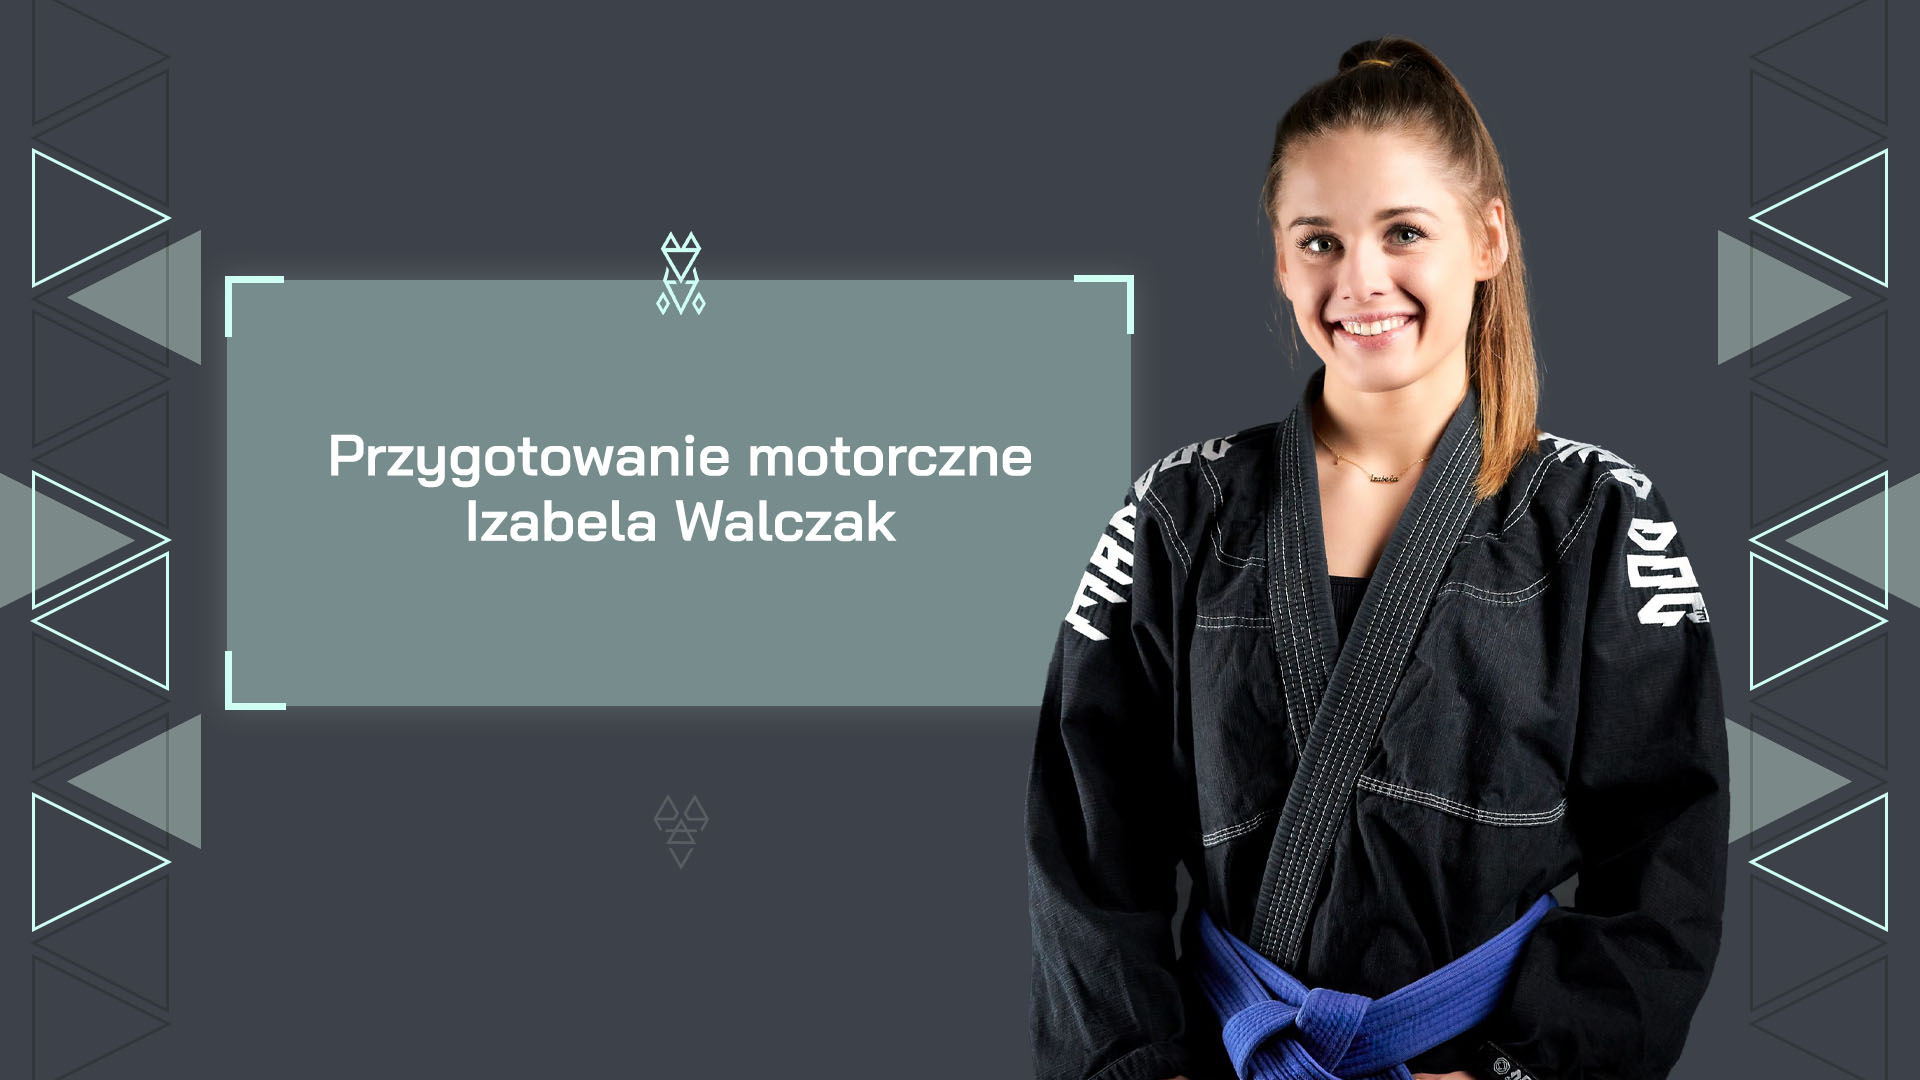 Przygotowanie motoryczne Izabela Walczak cs. Matt Kosmaczewski